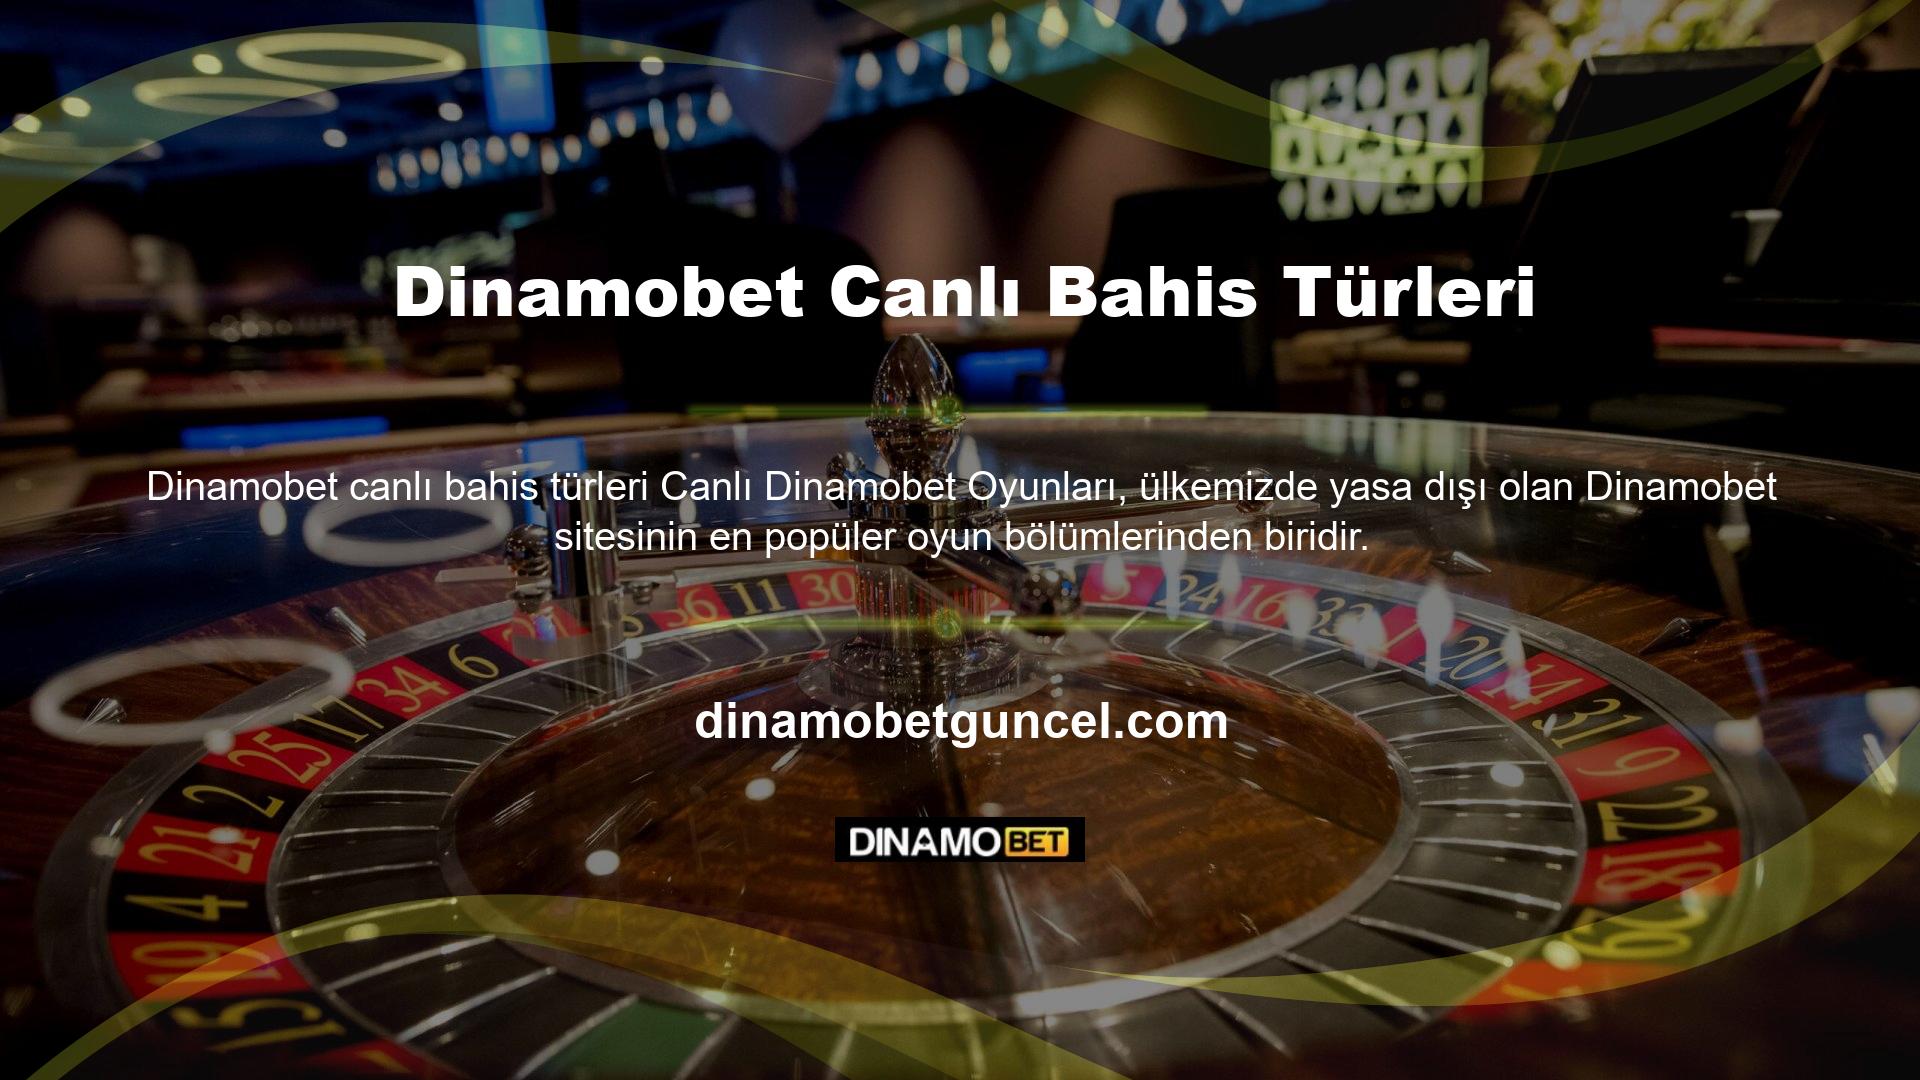 Dinamobet bahis sitesi, canlı Dinamobet bölümü ile üyelerine kaliteli Dinamobet oyun hizmeti sunmayı amaçlayan sitelerden biridir